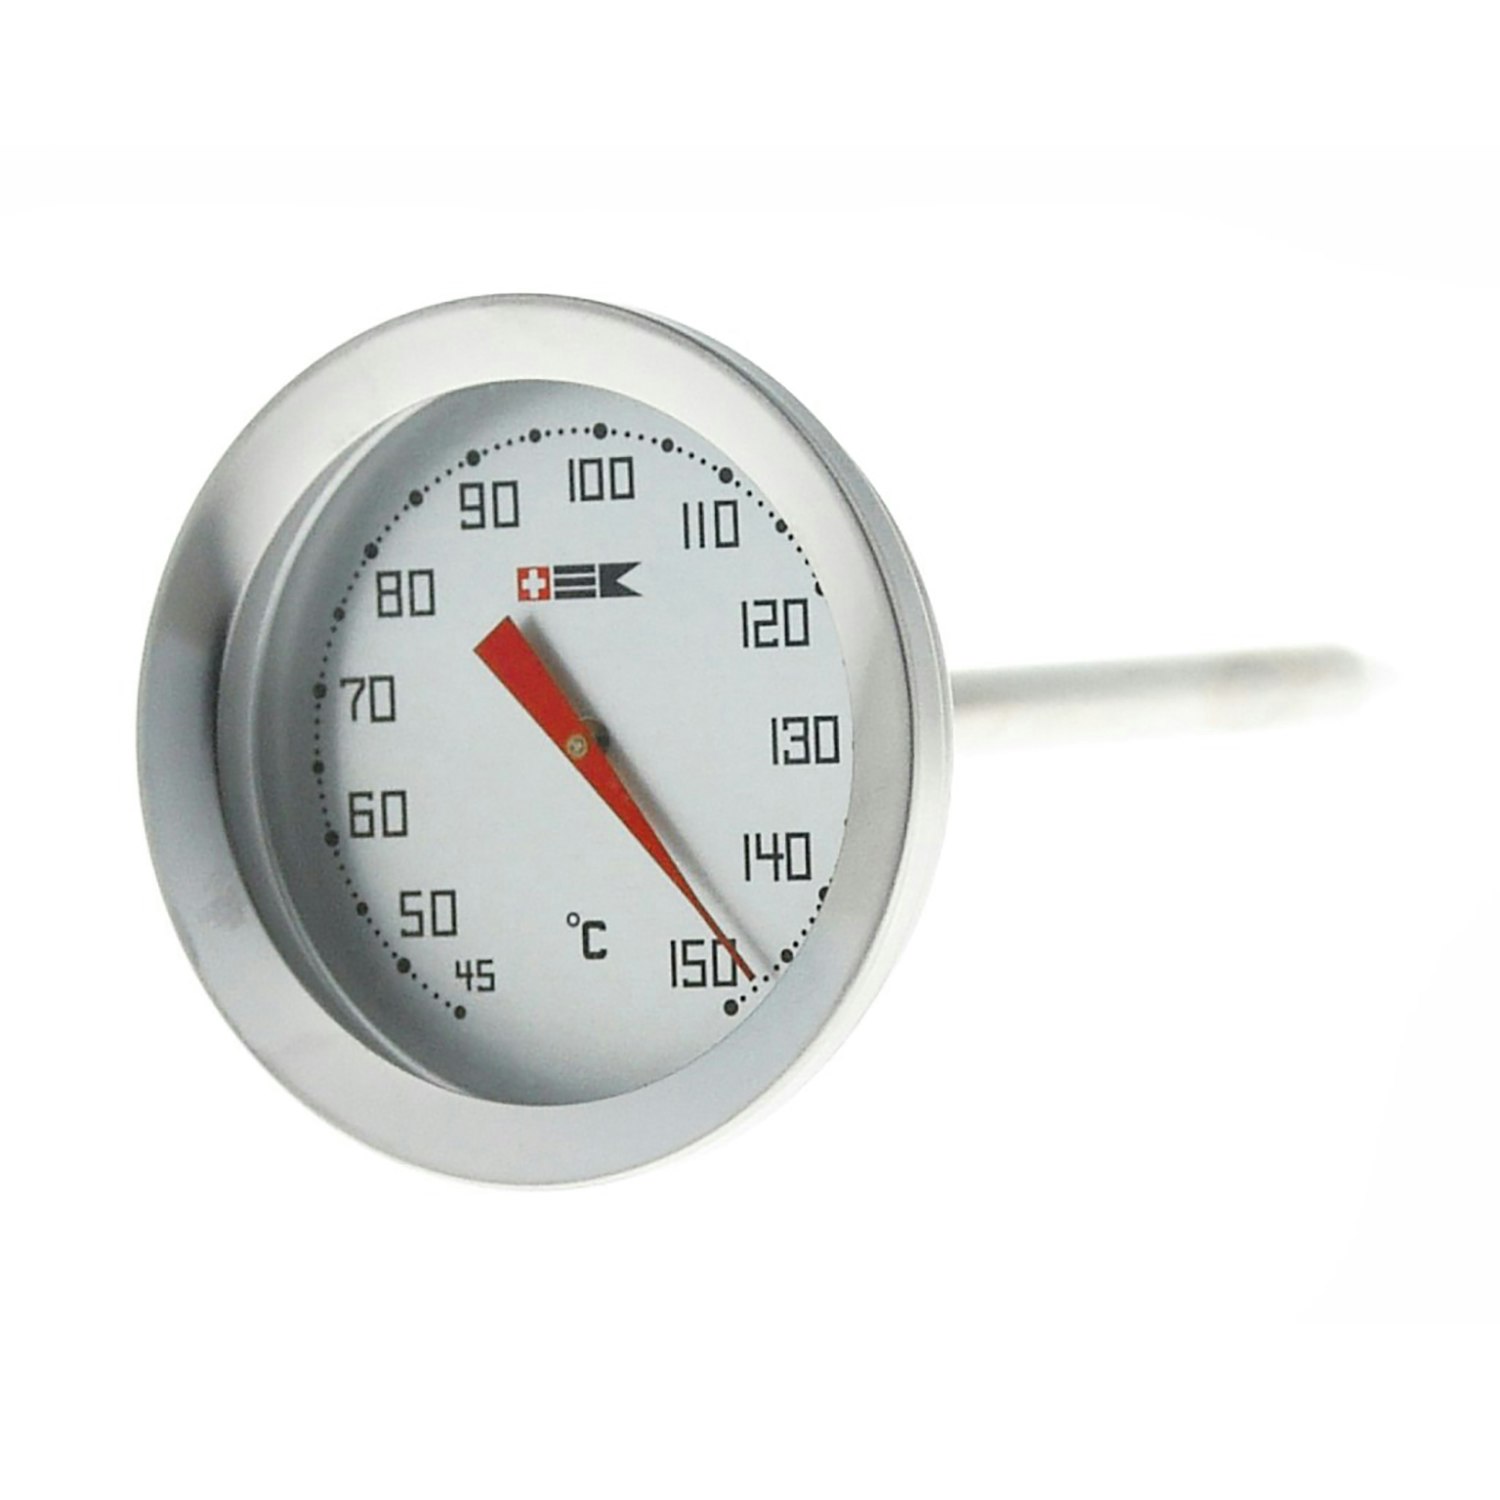 https://royaldesign.com/image/2/bengt-ek-design-meat-thermometer-0-100c-0